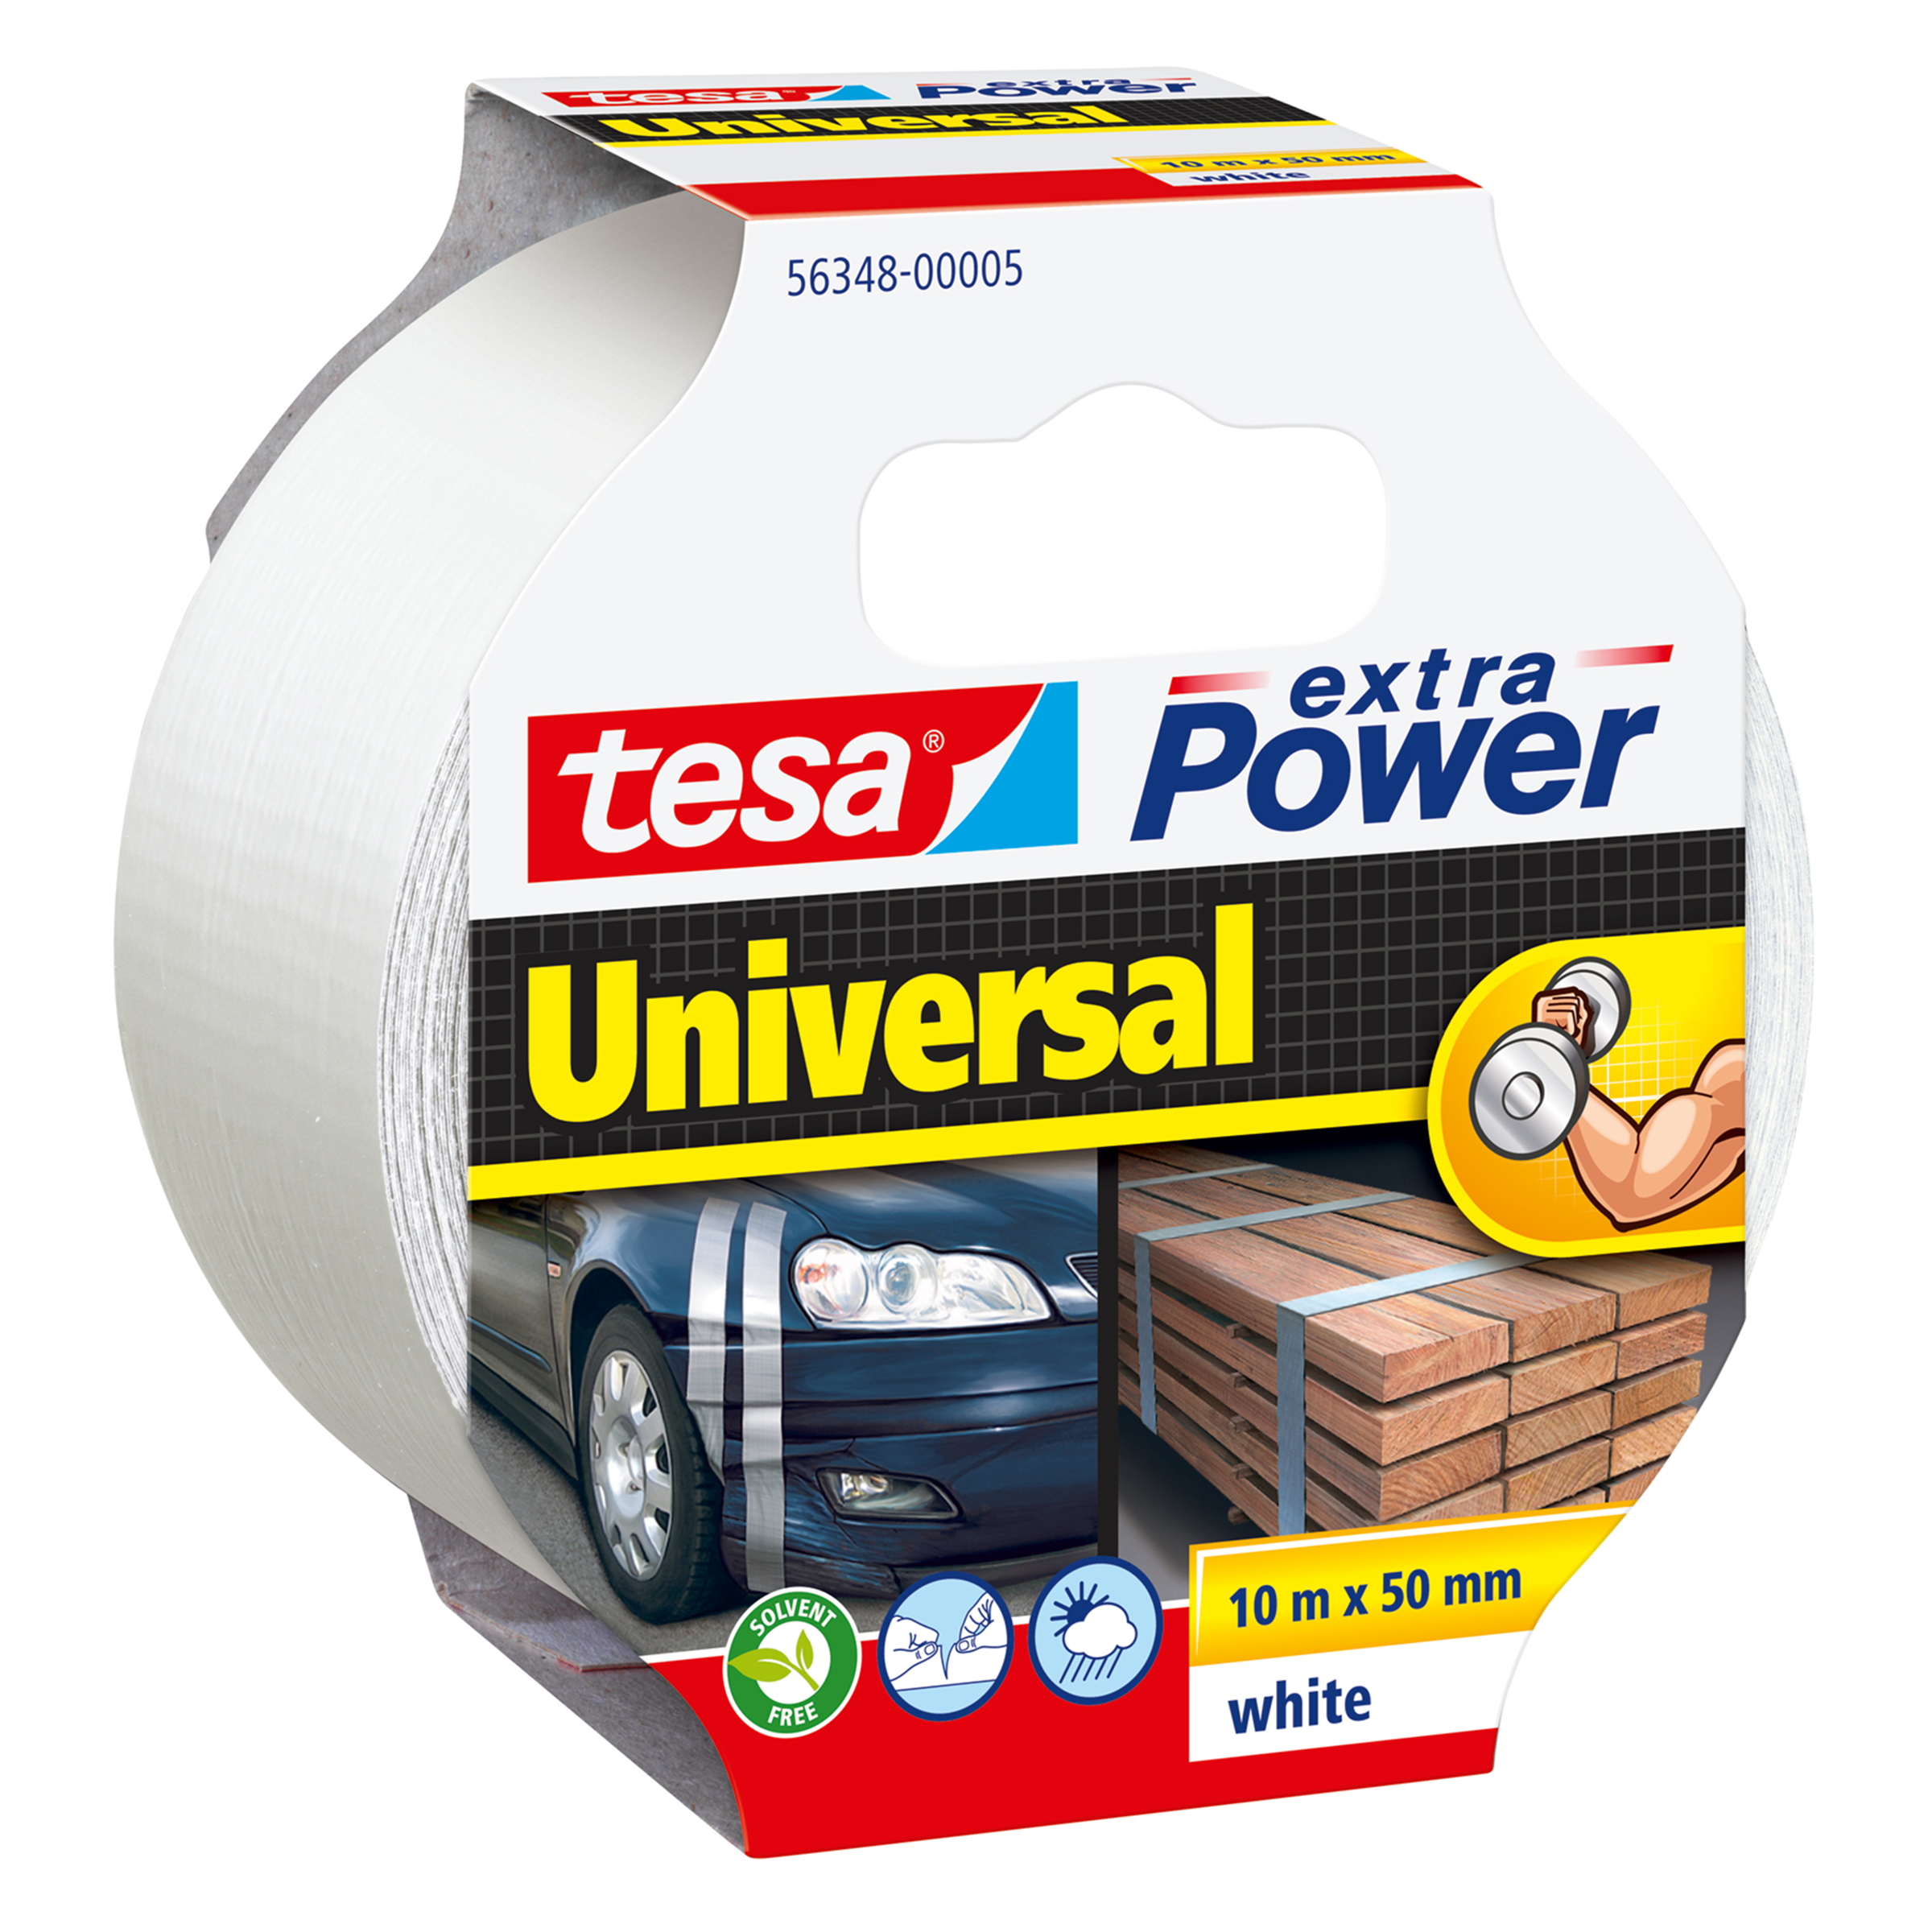 Tesa extra Power Universal - Weiß - Befestigung - Handwerk - Kennzeichnung - Reparatur - 10 m - 50 mm